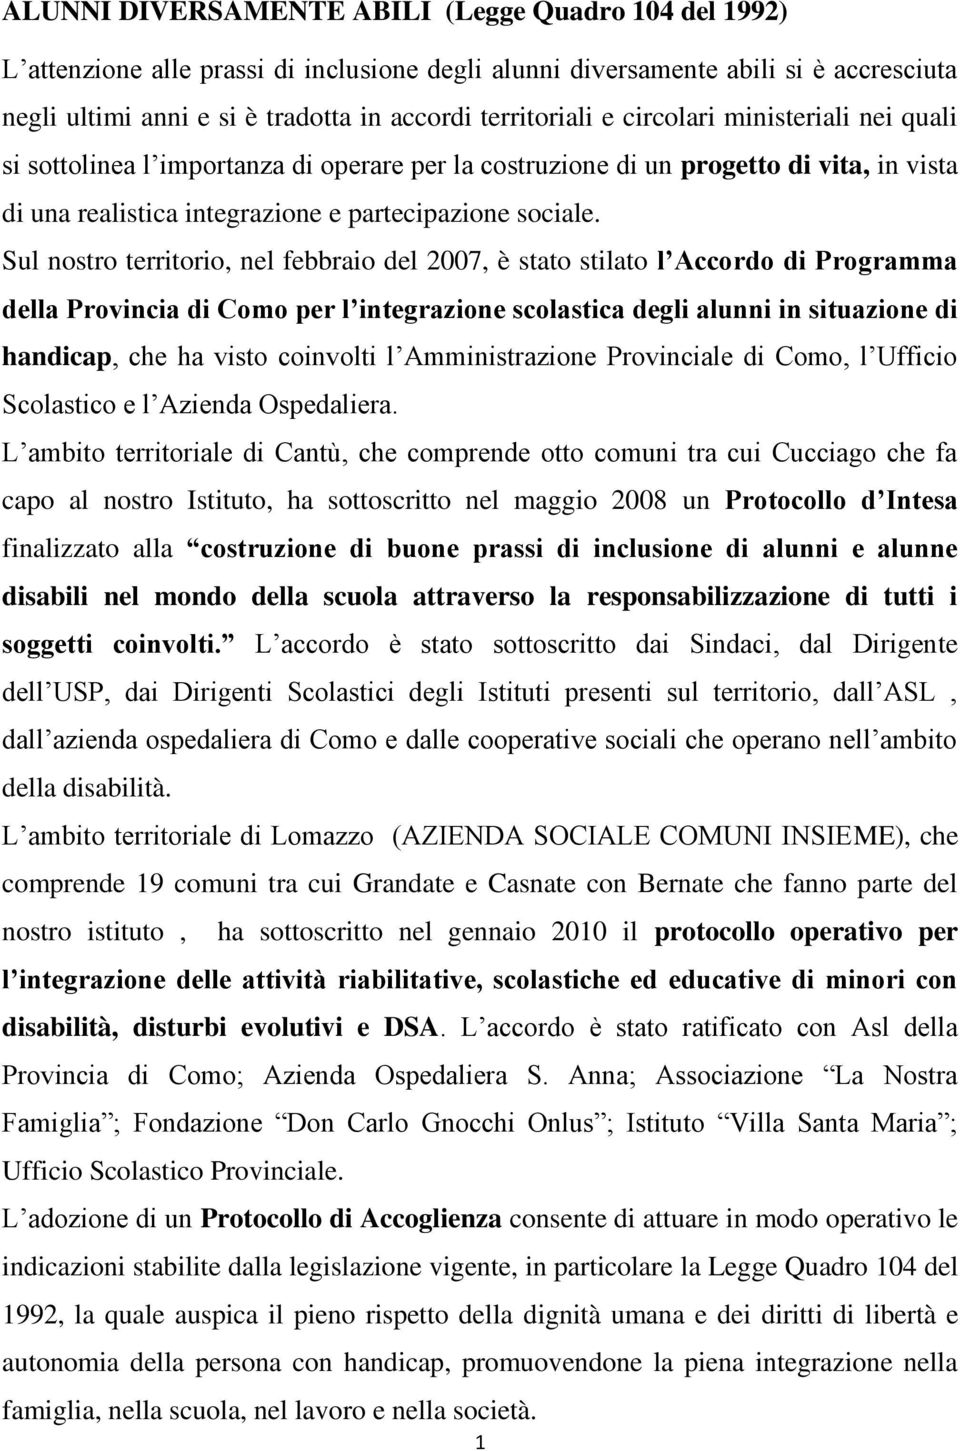 Sul nostro territorio, nel febbraio del 2007, è stato stilato l Accordo di Programma della Provincia di Como per l integrazione scolastica degli alunni in situazione di handicap, che ha visto